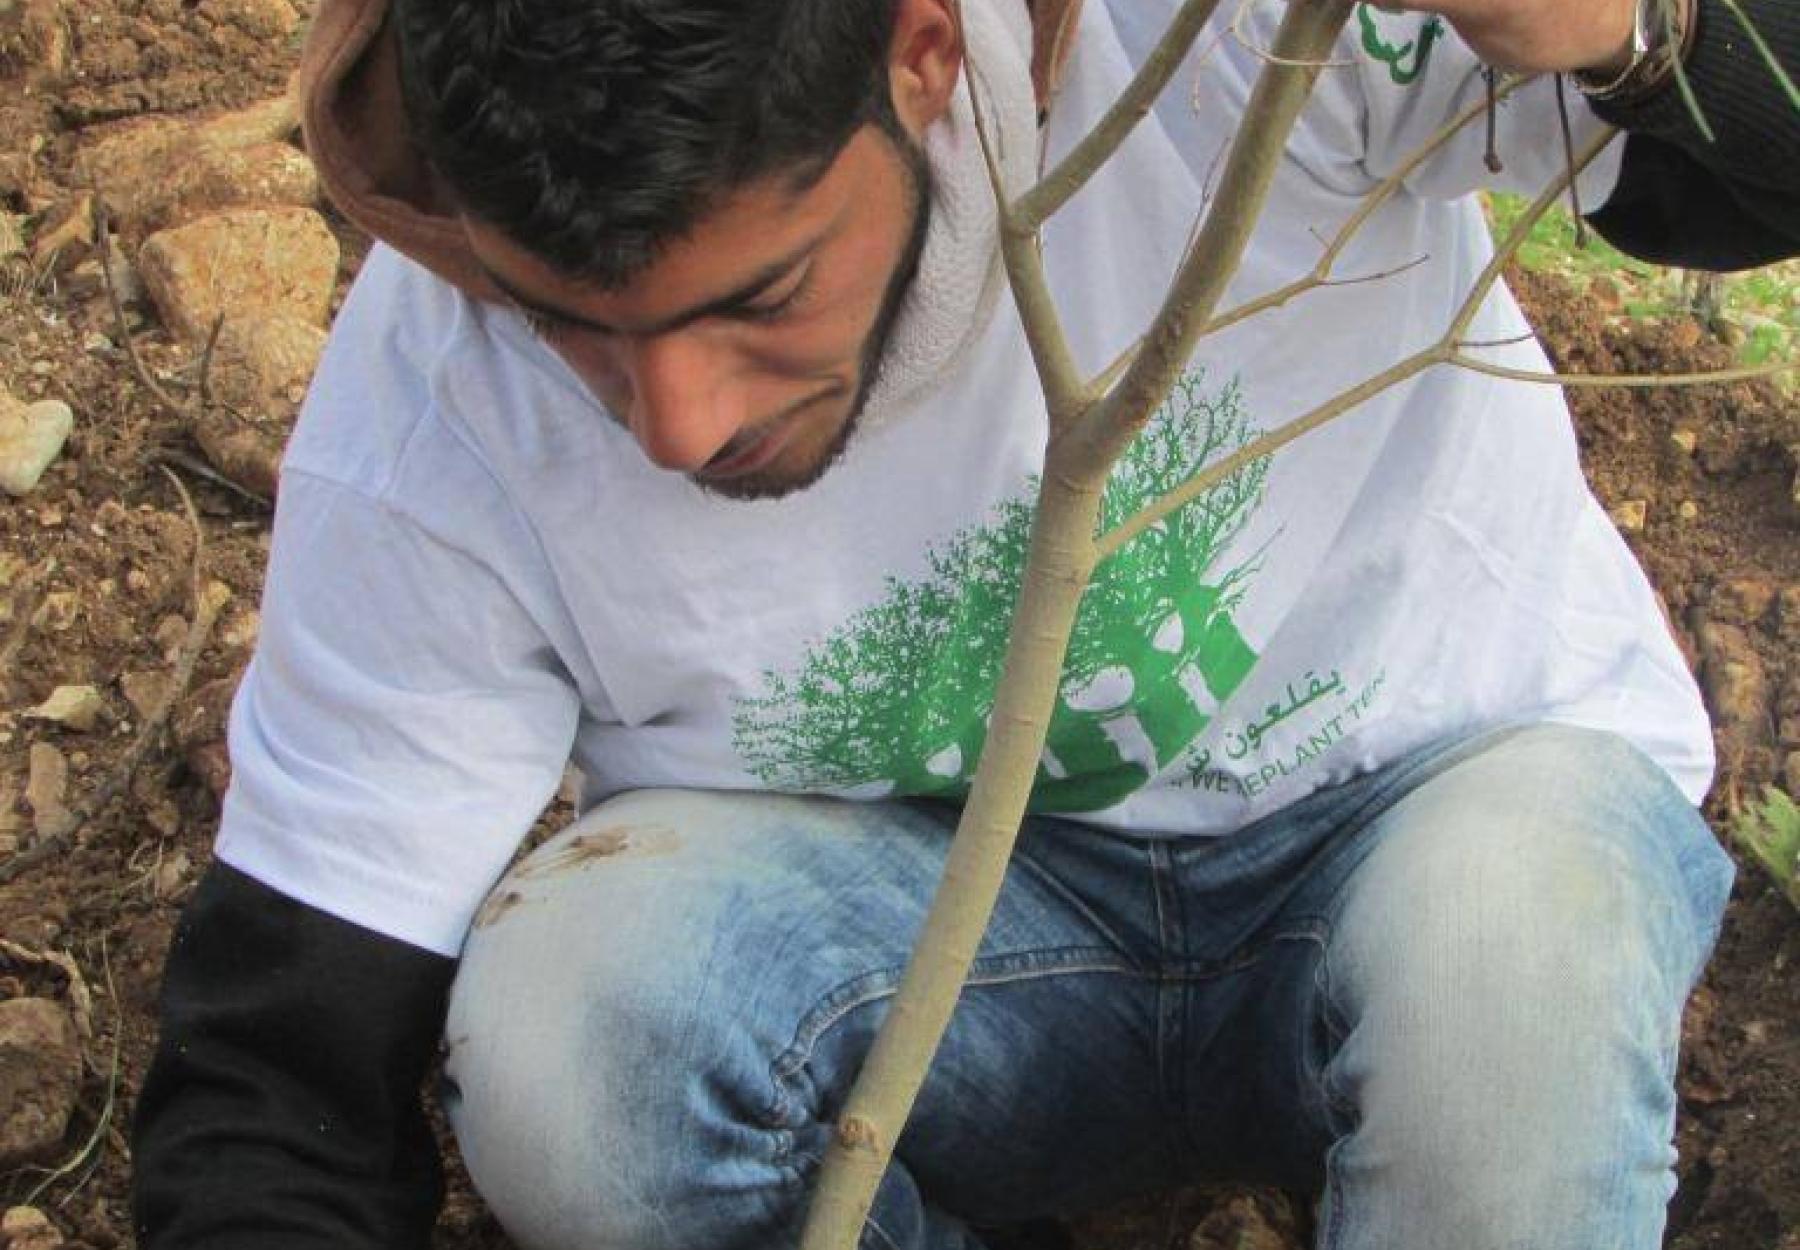 برنامج المليون شجرة يزرع أشجار الزيتون في قريتي عتيل والشوفة في طولكرم